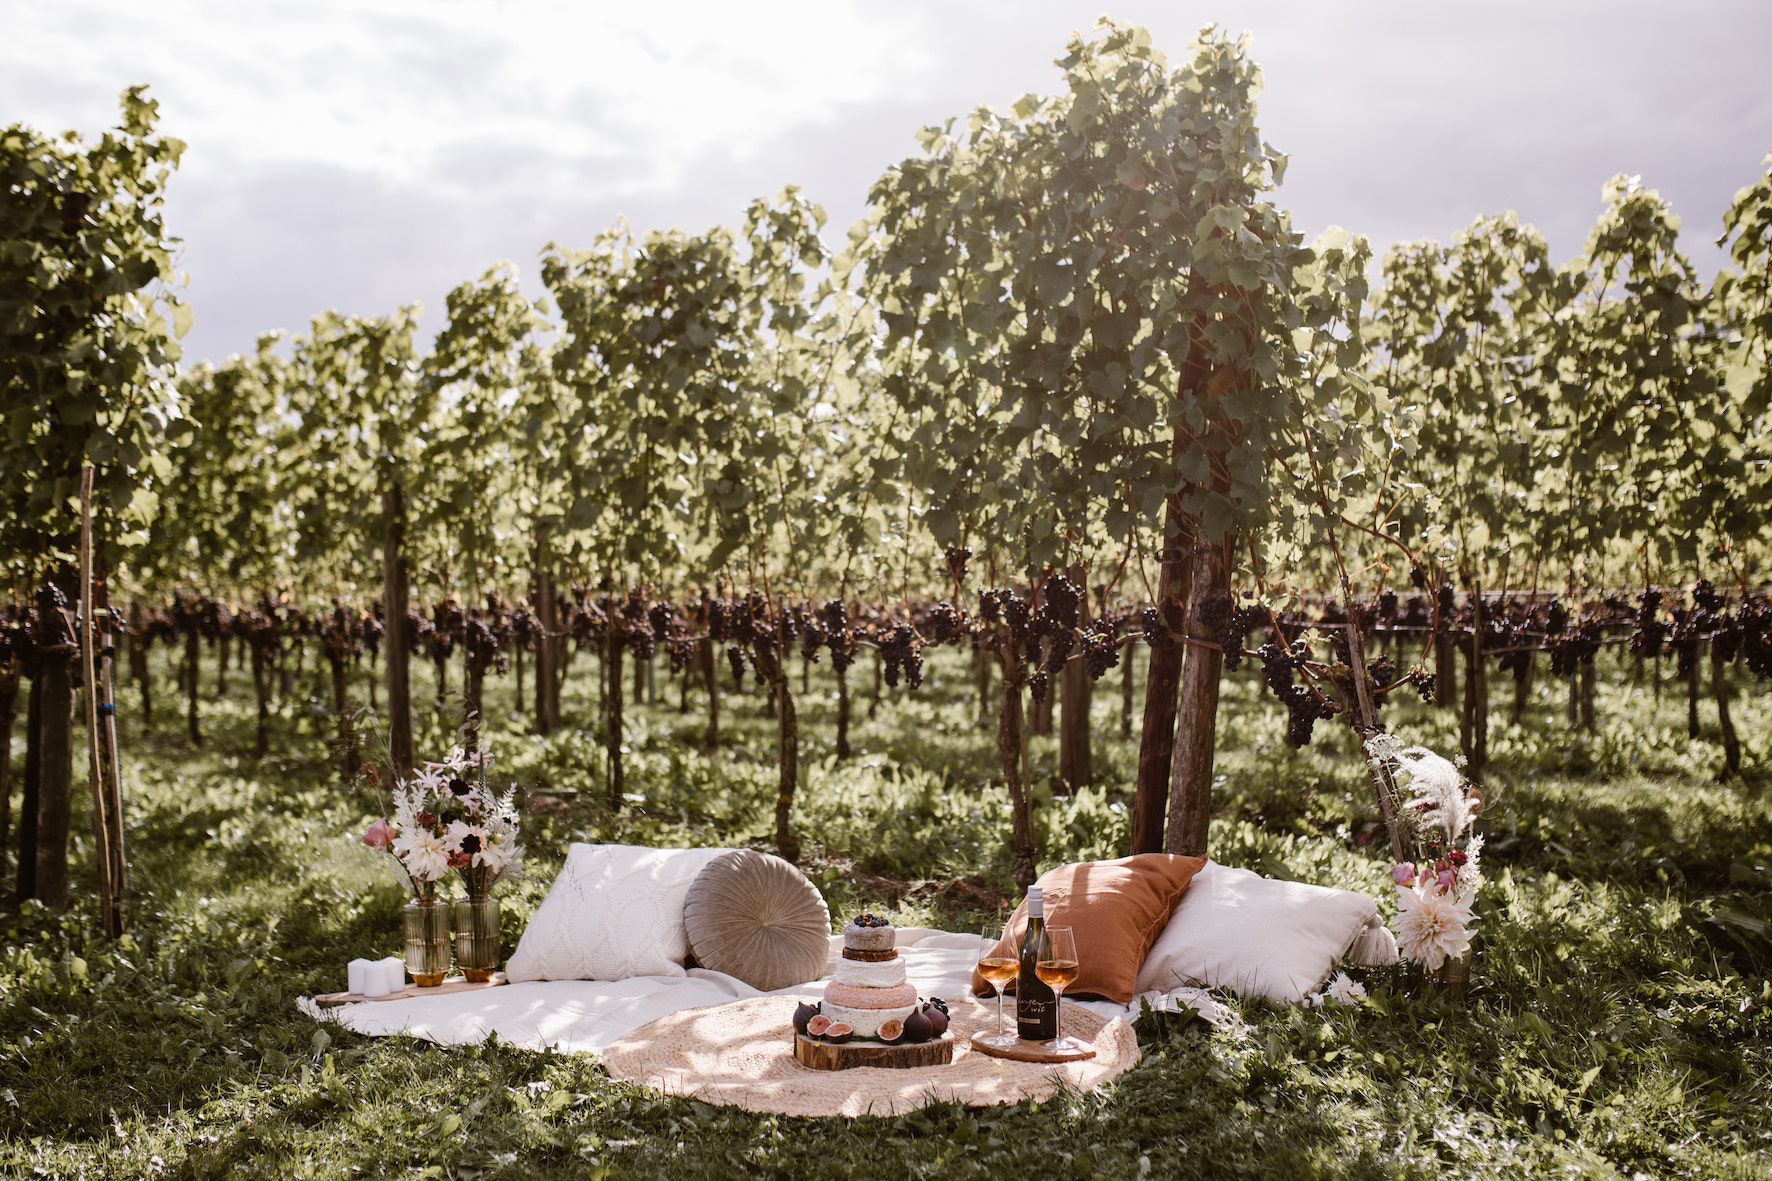 Romantische picknick in de wijngaard voor 2